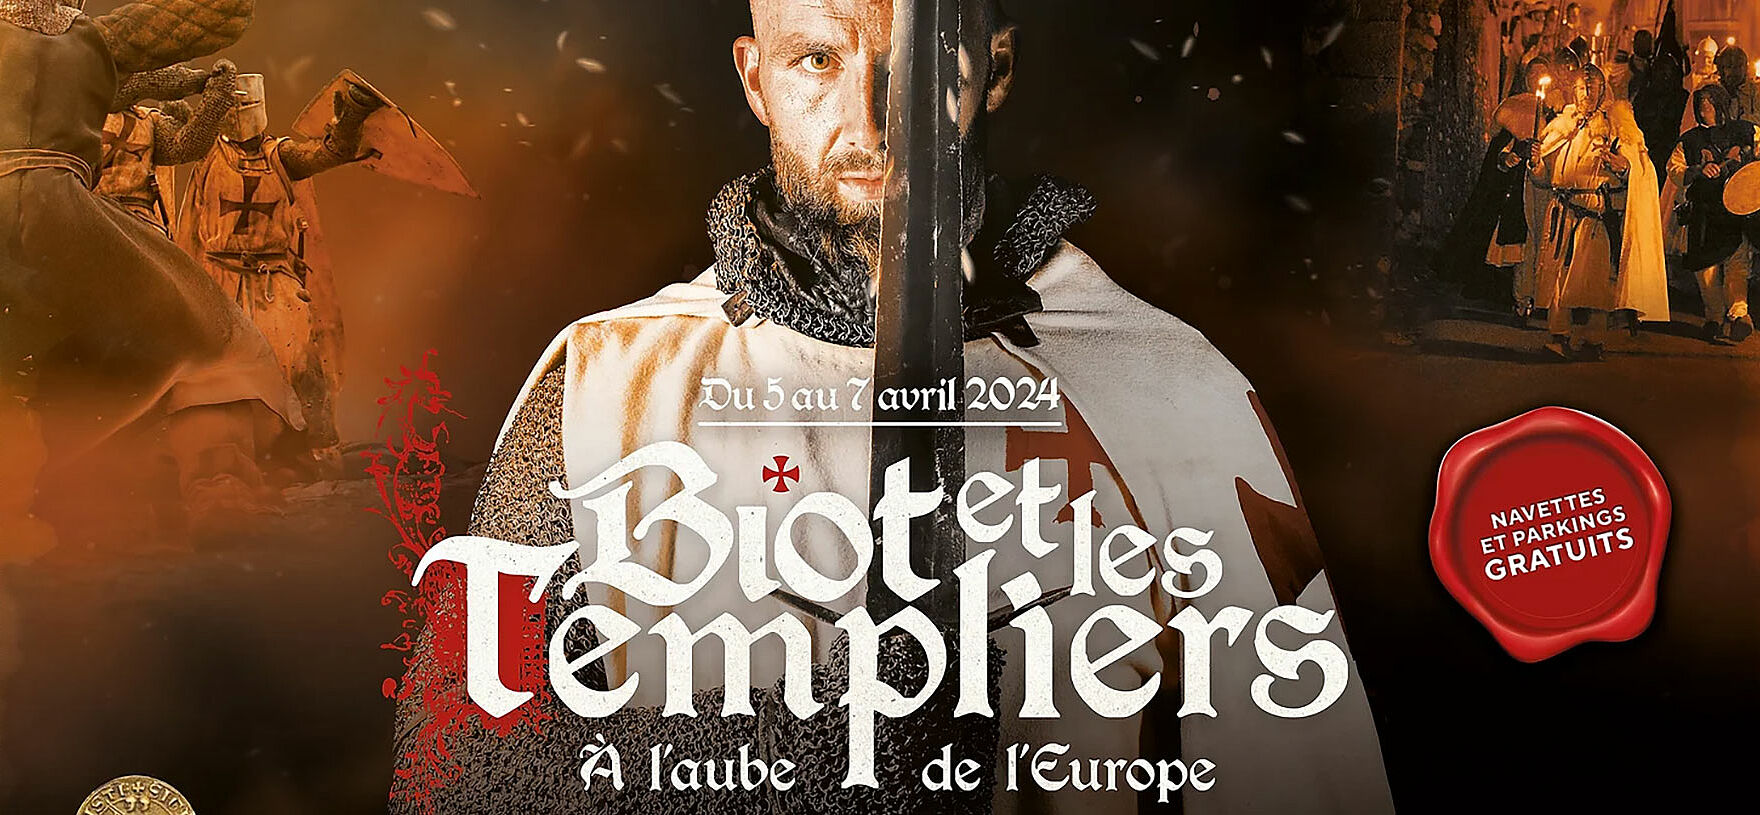 Affiche de Biot et les templiers montrant un templier et son épée